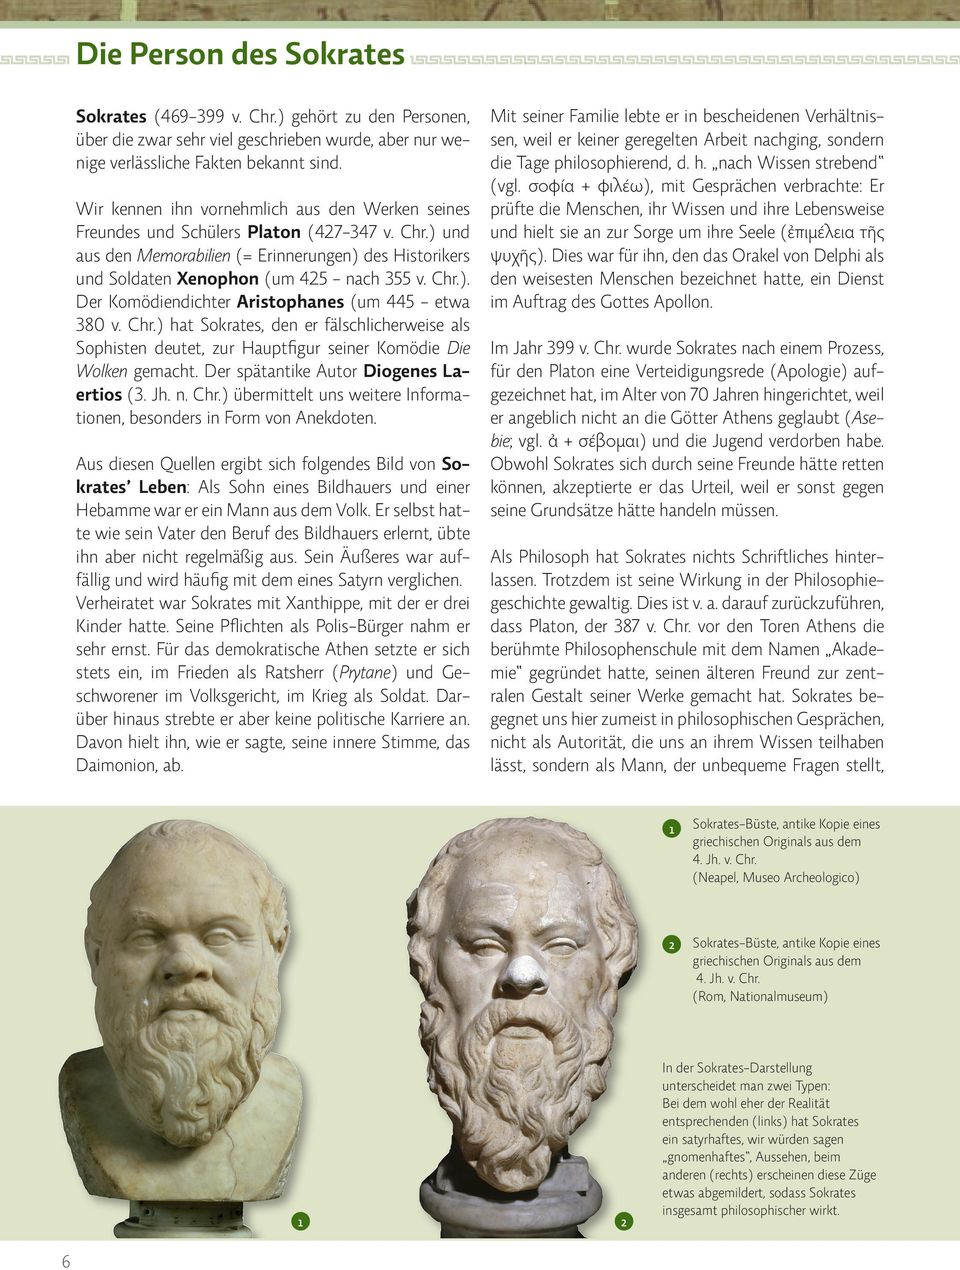 Chr.). Der Komödiendichter Aristophanes (um 445 - etwa 380 v. Chr.) hat Sokrates, den er fälschlicherweise als Sophisten deutet, zur Hauptfigur seiner Komödie Die Wolken gemacht.